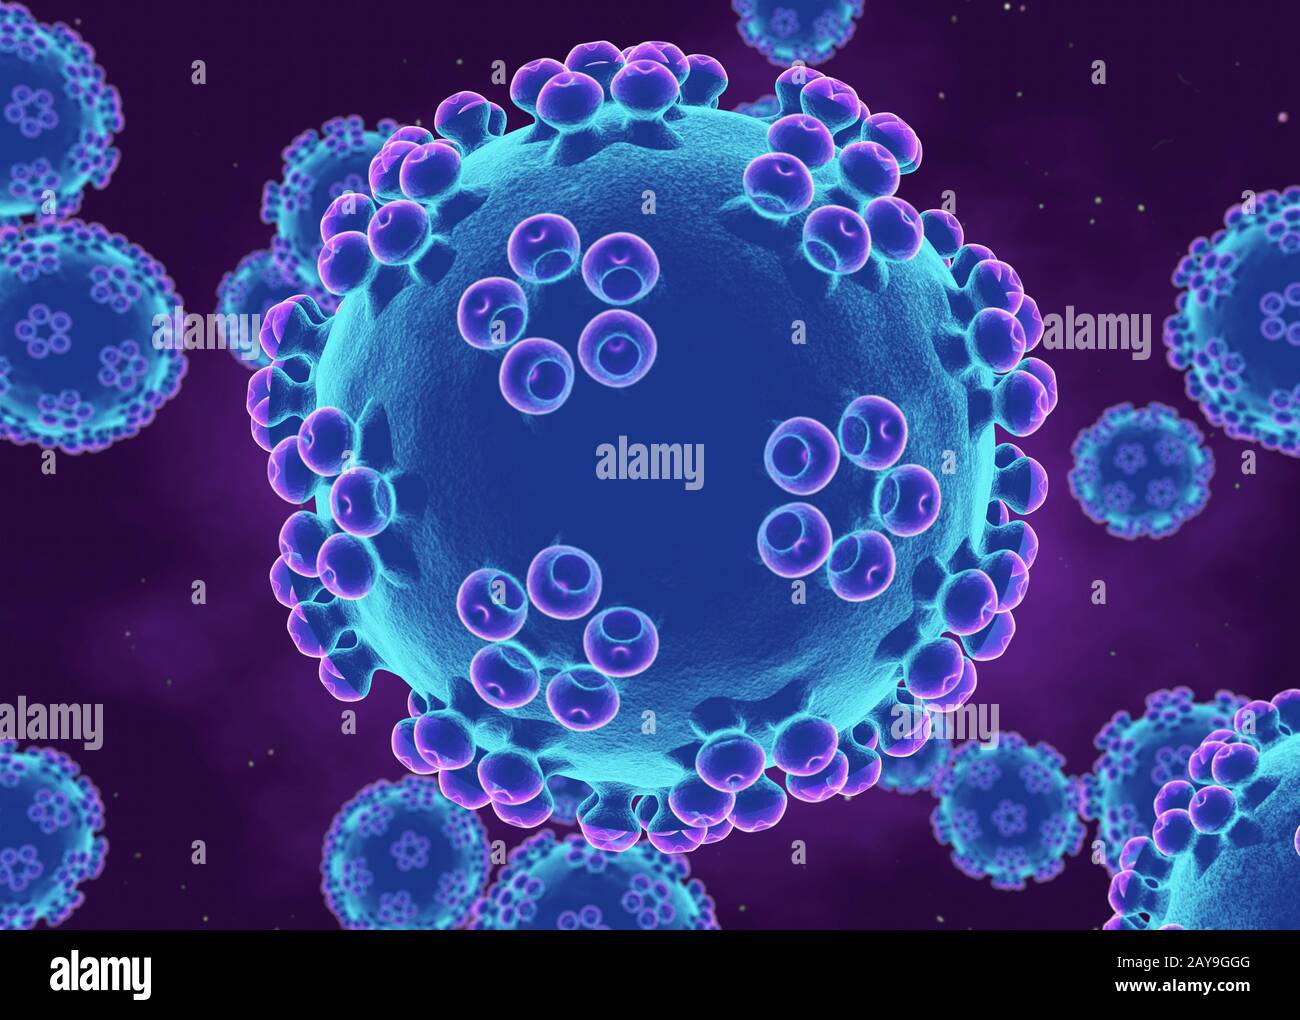 Human papillomaviruses, illustration Stock Photo